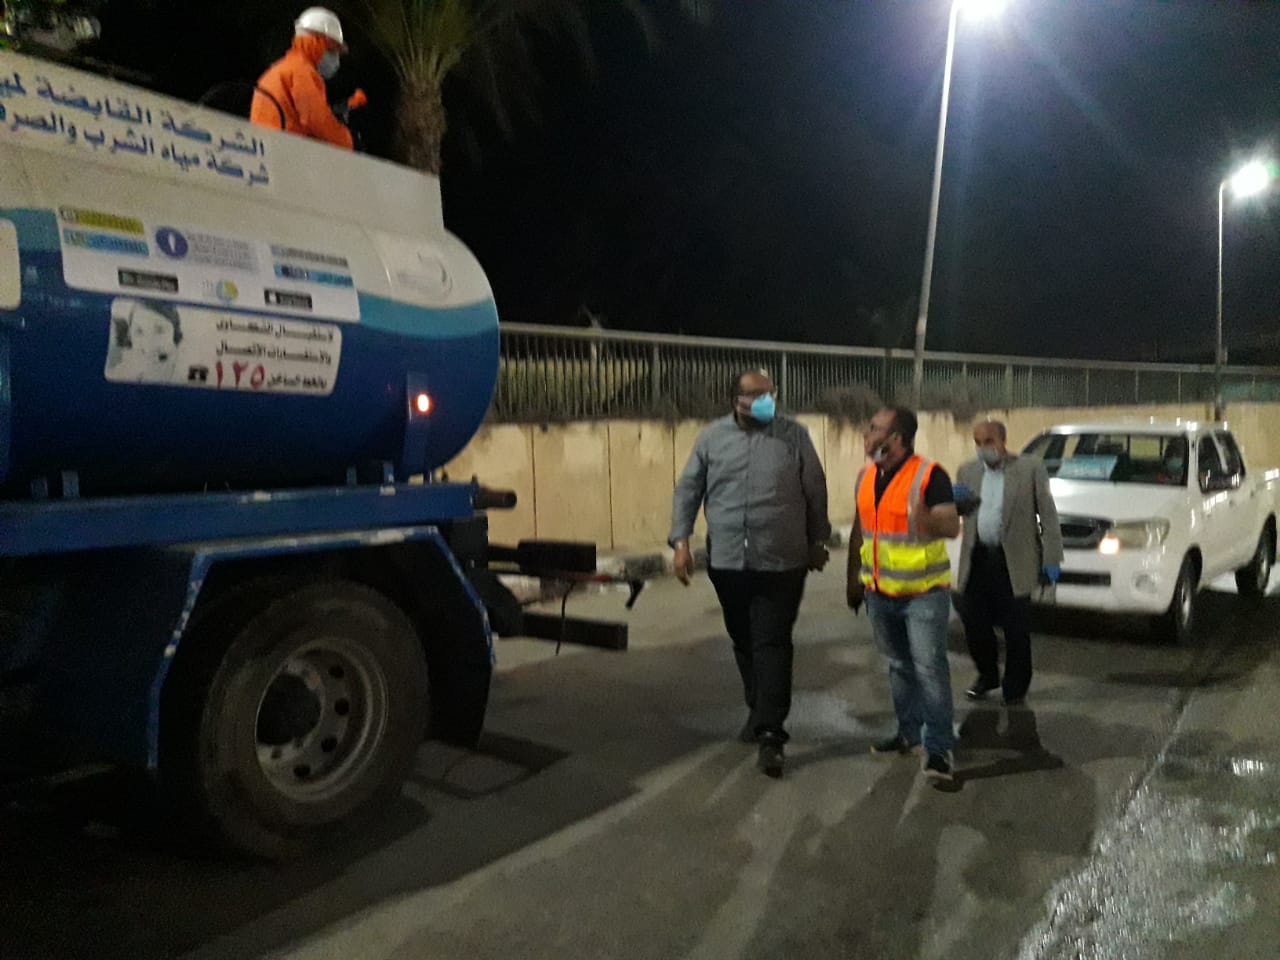 سيارات شركة مياه اسيوط تجوب شوارع المحافظة لتطهيرها وتعقيمها لمواجهة فيروس كورونا (2)